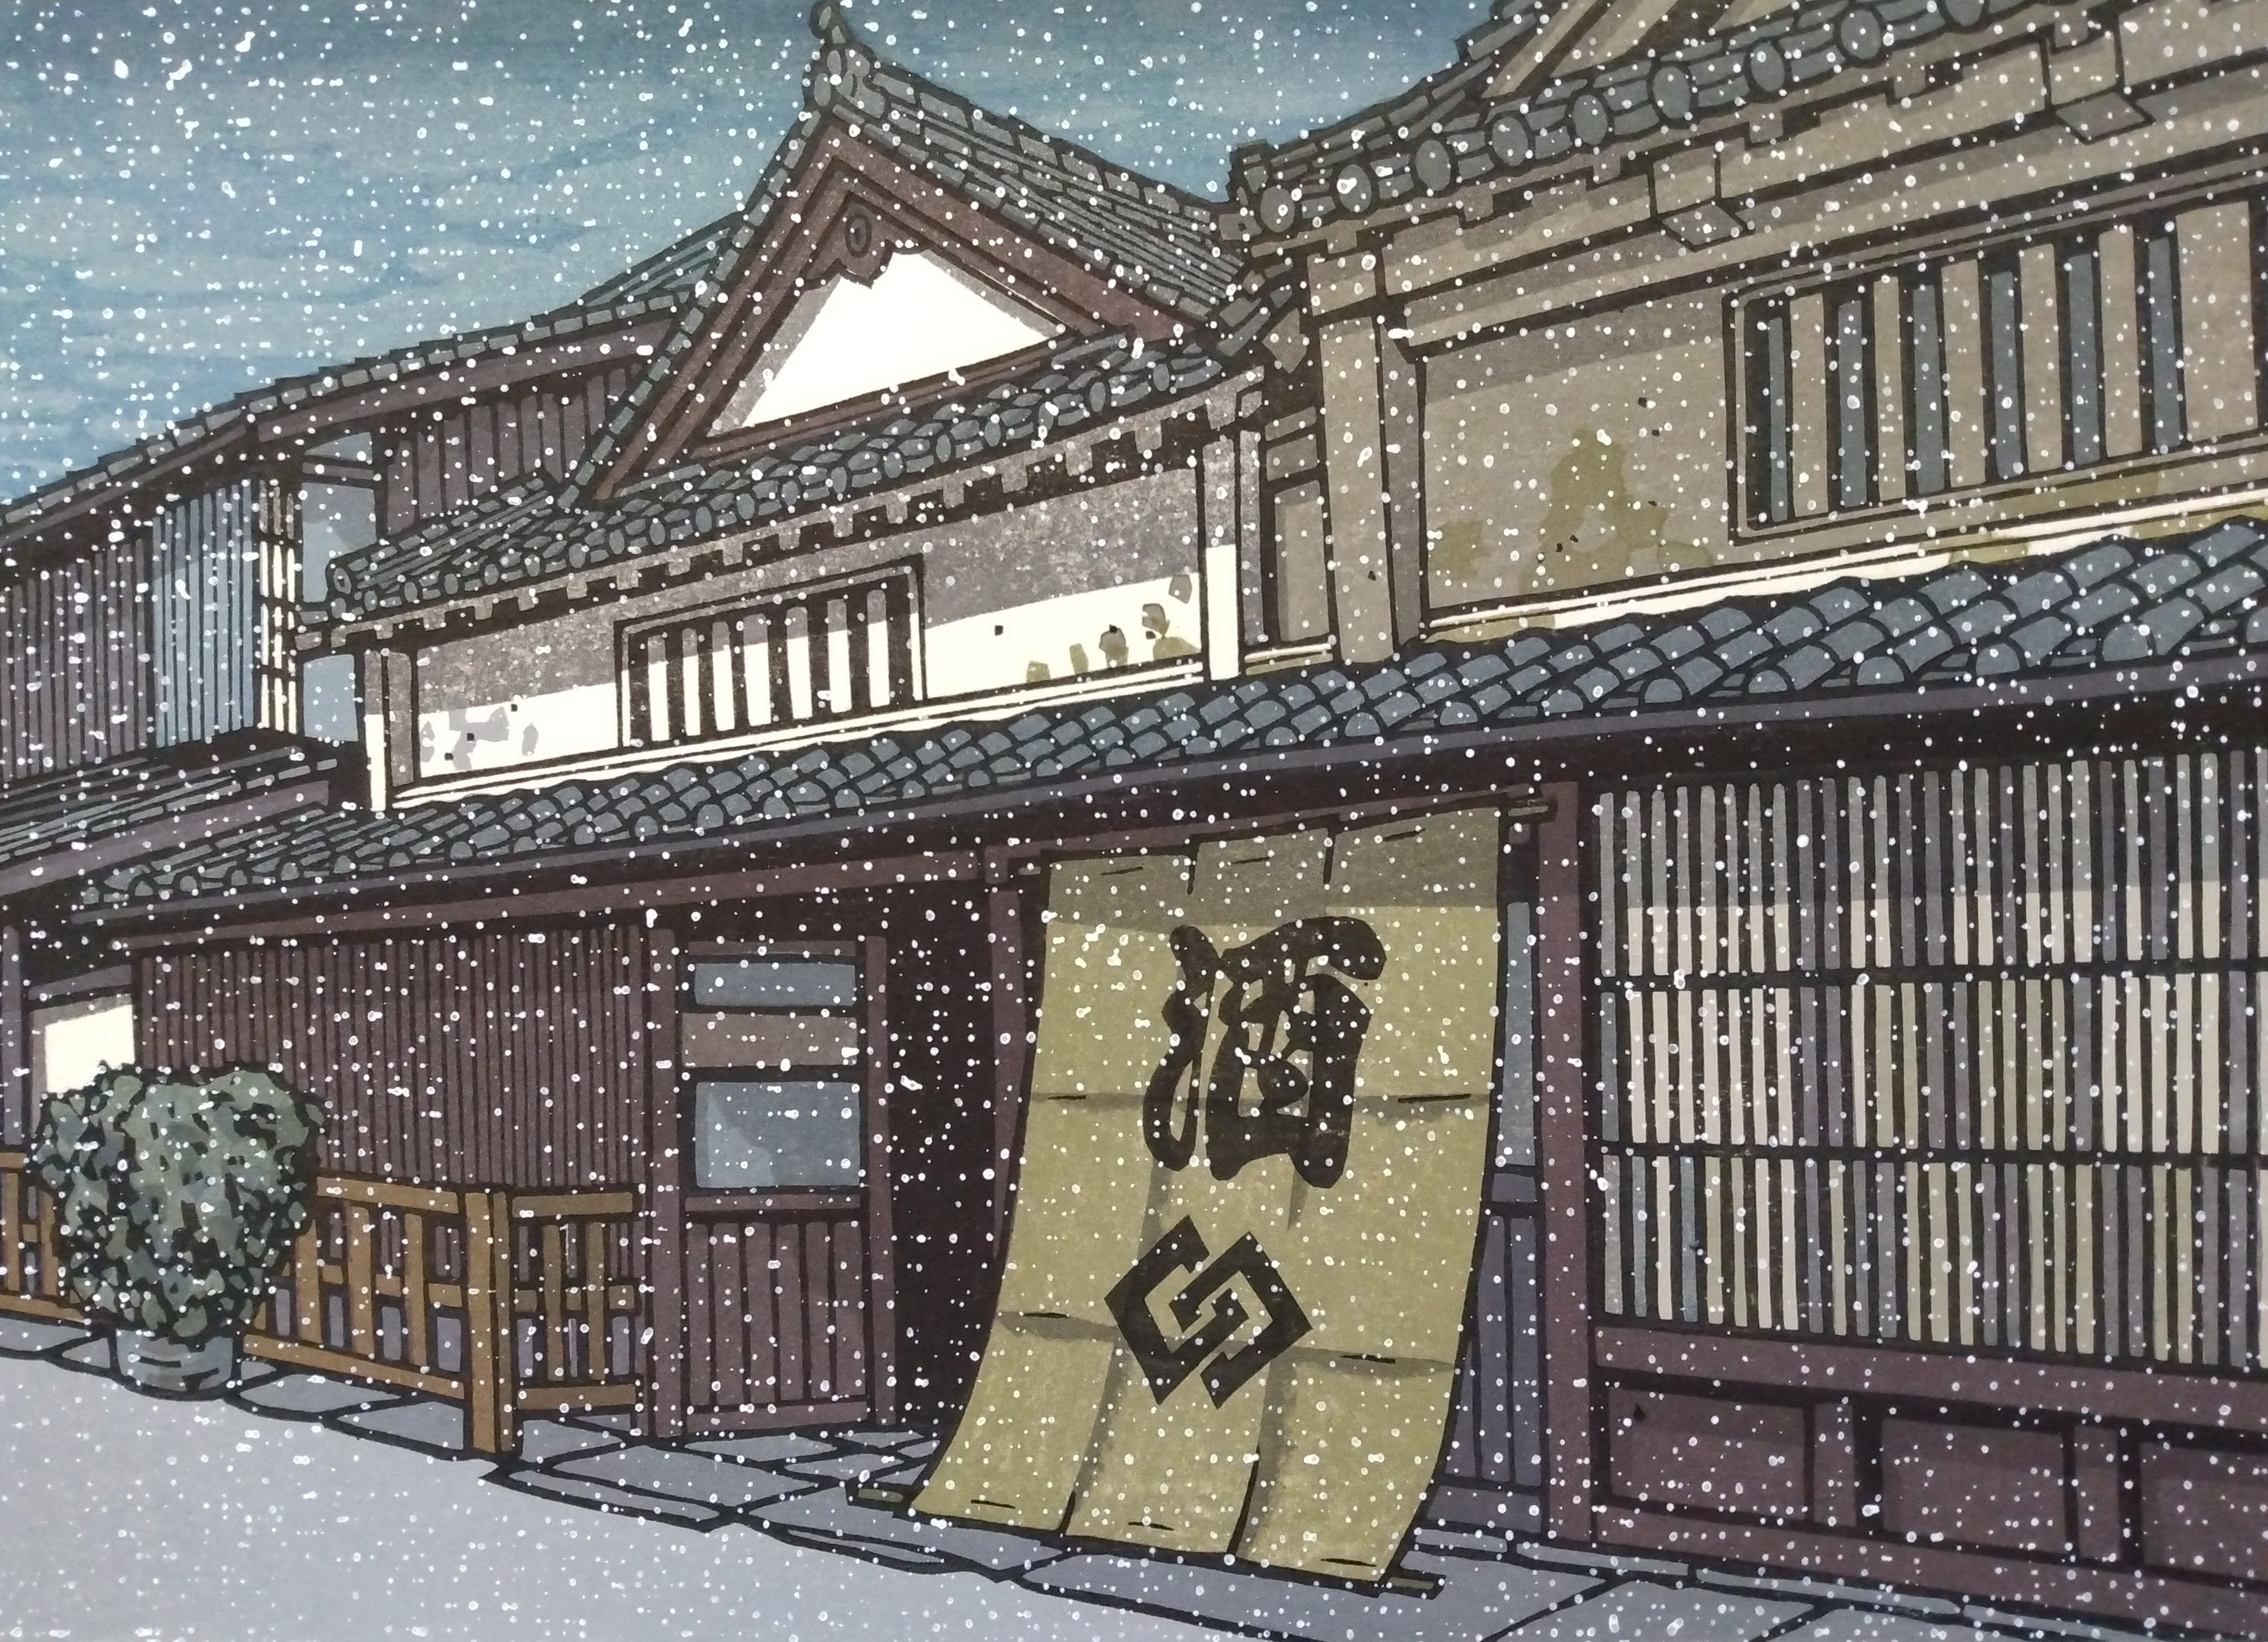 Woodblock Print by Katsuyuki Nishijima, "Shop in Takehara" (Takehara no Ho)